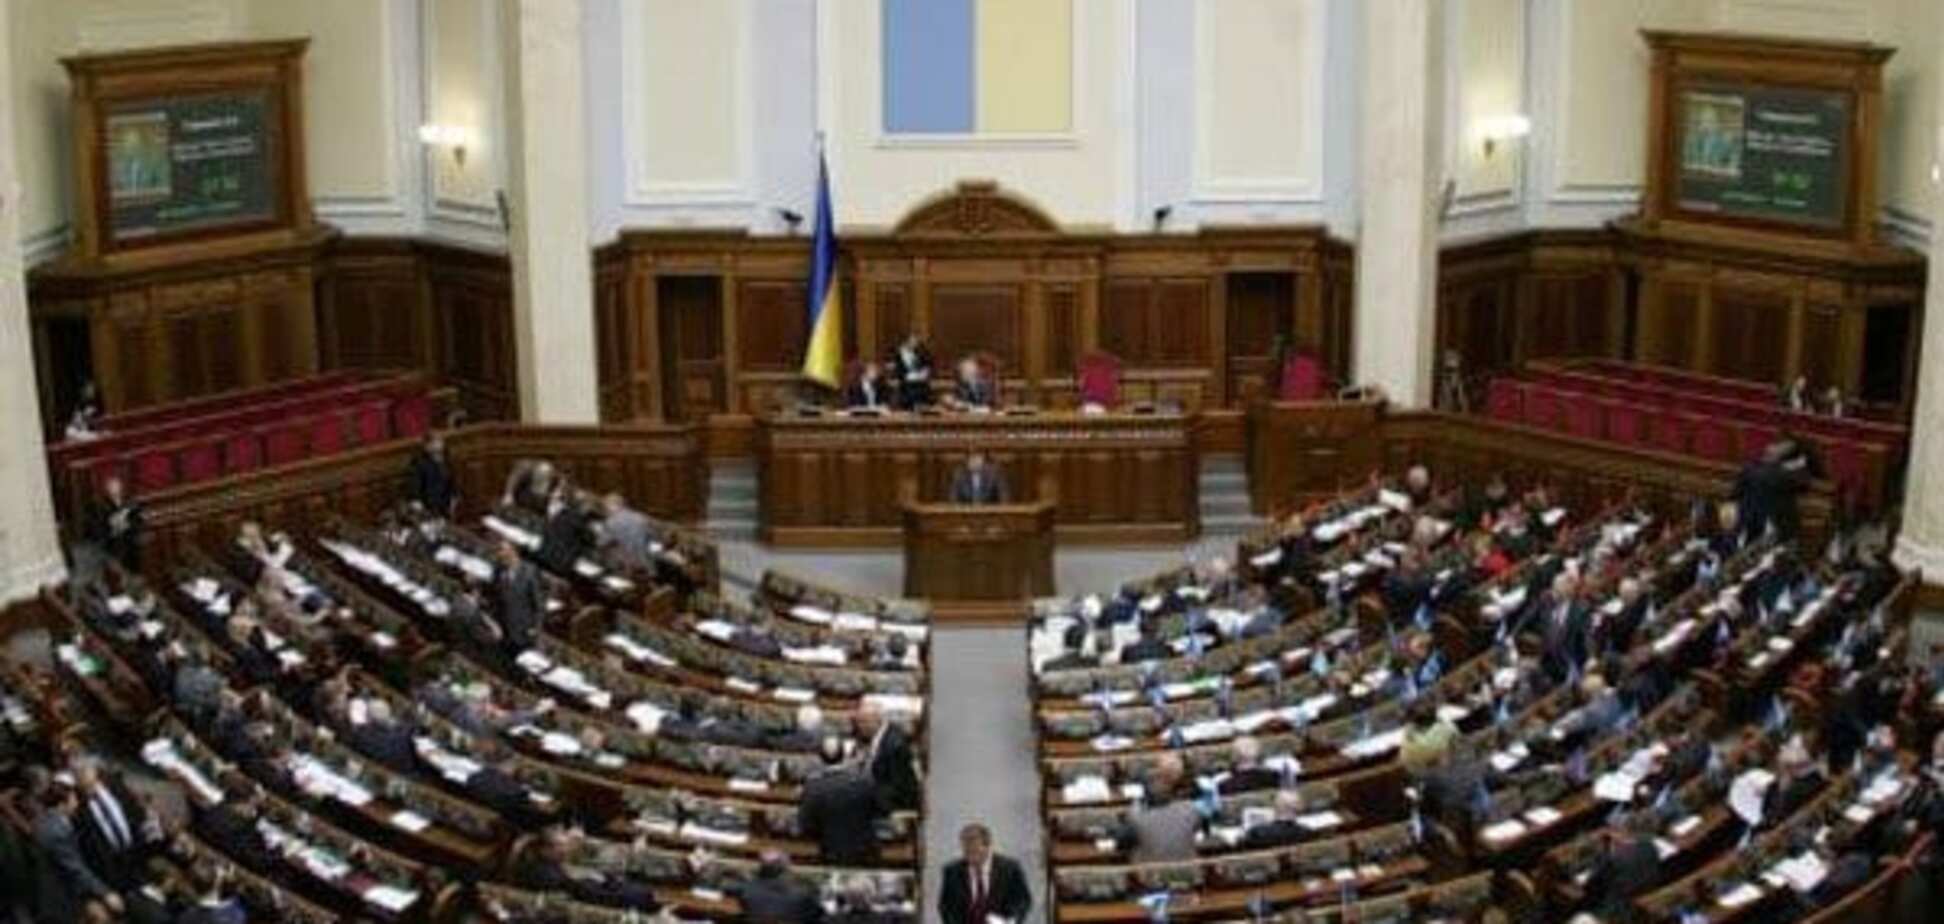 Депутати, опинившись у Верховній Раді, починають деградувати – Шевчук